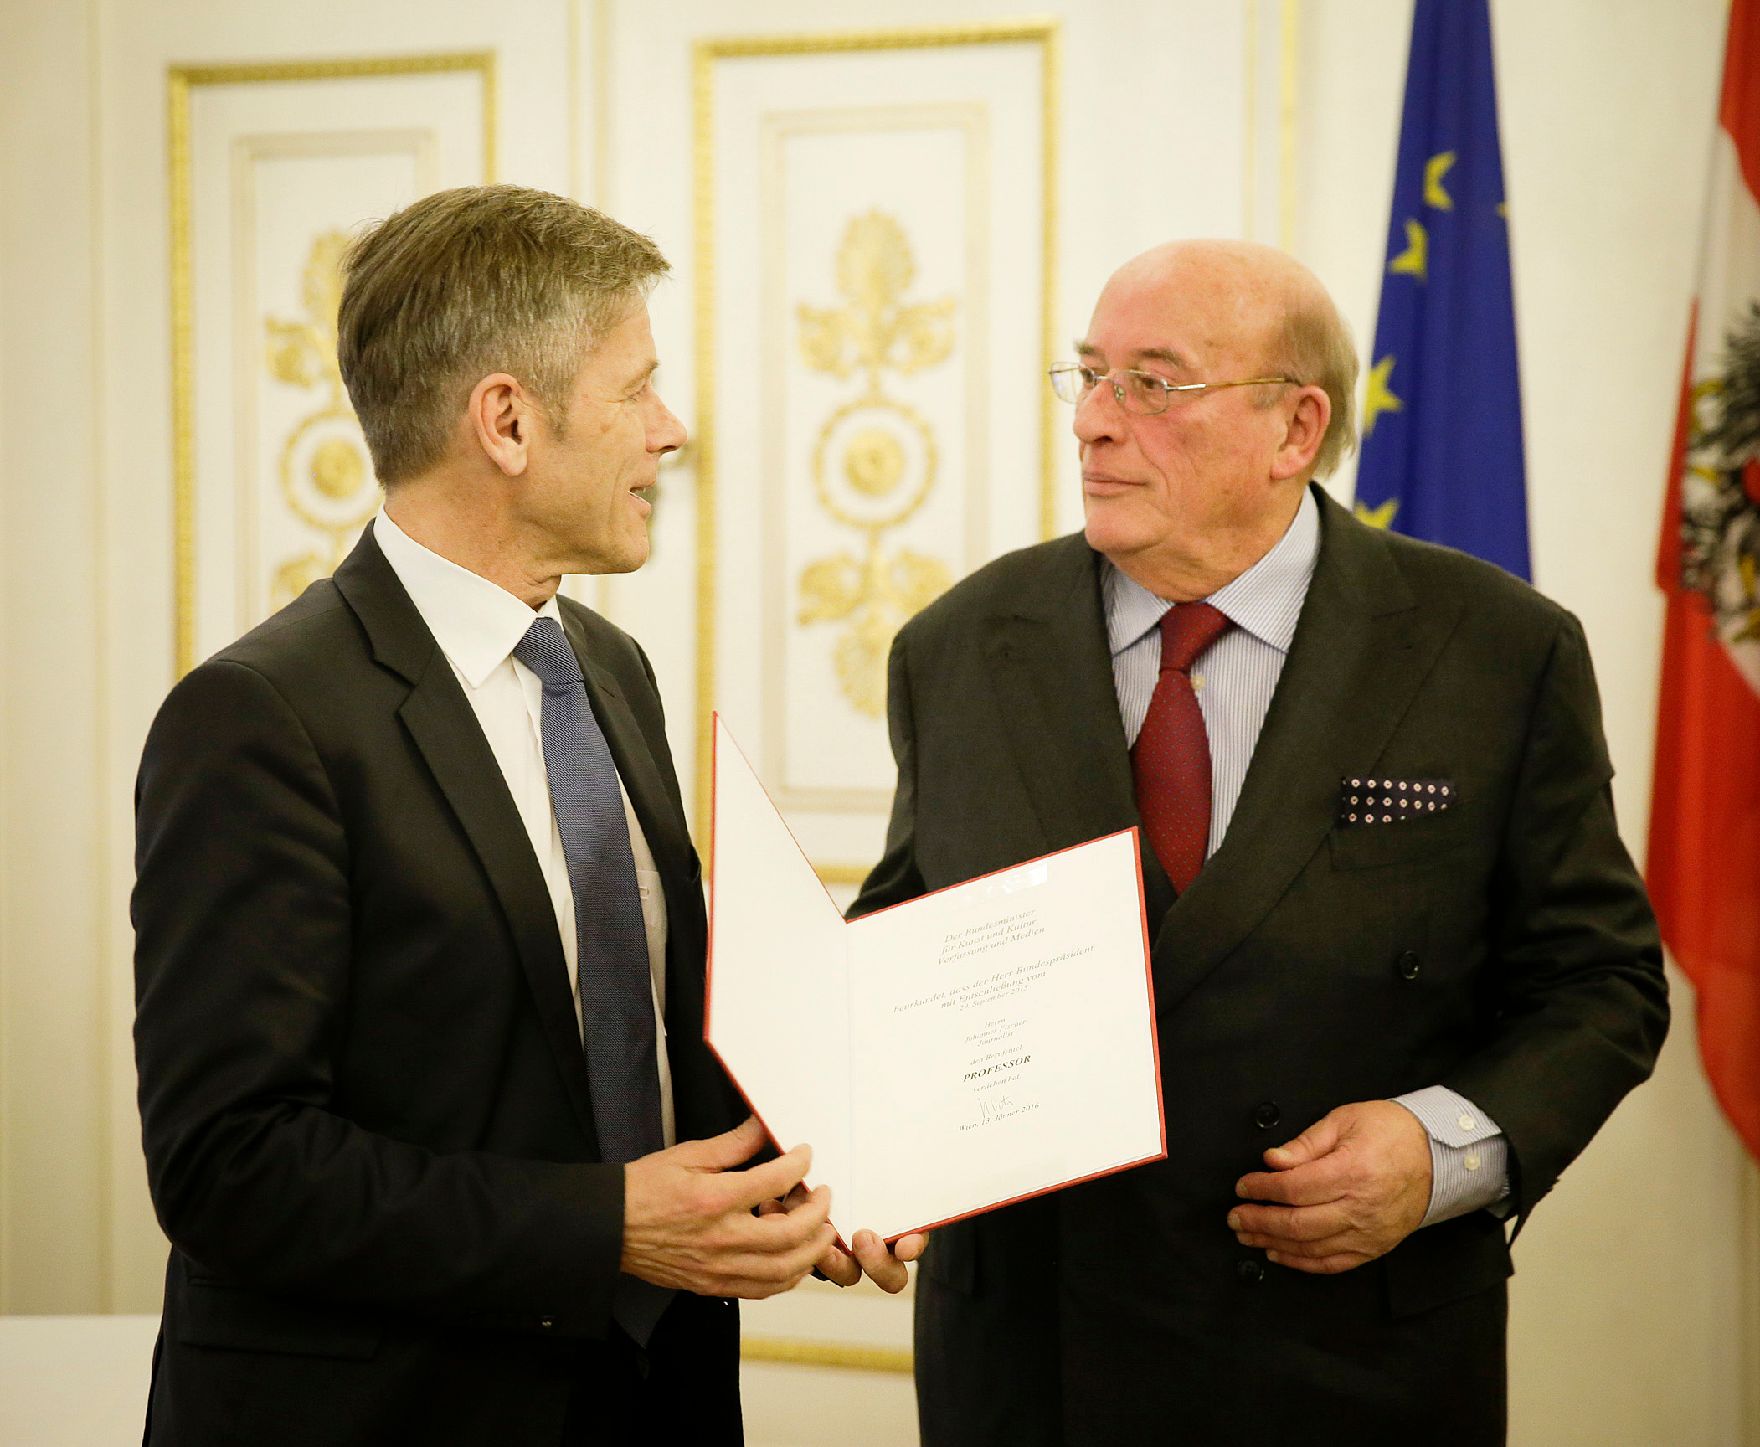 Am 13. Jänner 2016 überreichte Kunst- und Kulturminister Josef Ostermayer (l.) die Urkunde, mit der Johannes Fischer (r.) der Berufstitel Professor verliehen wurde.